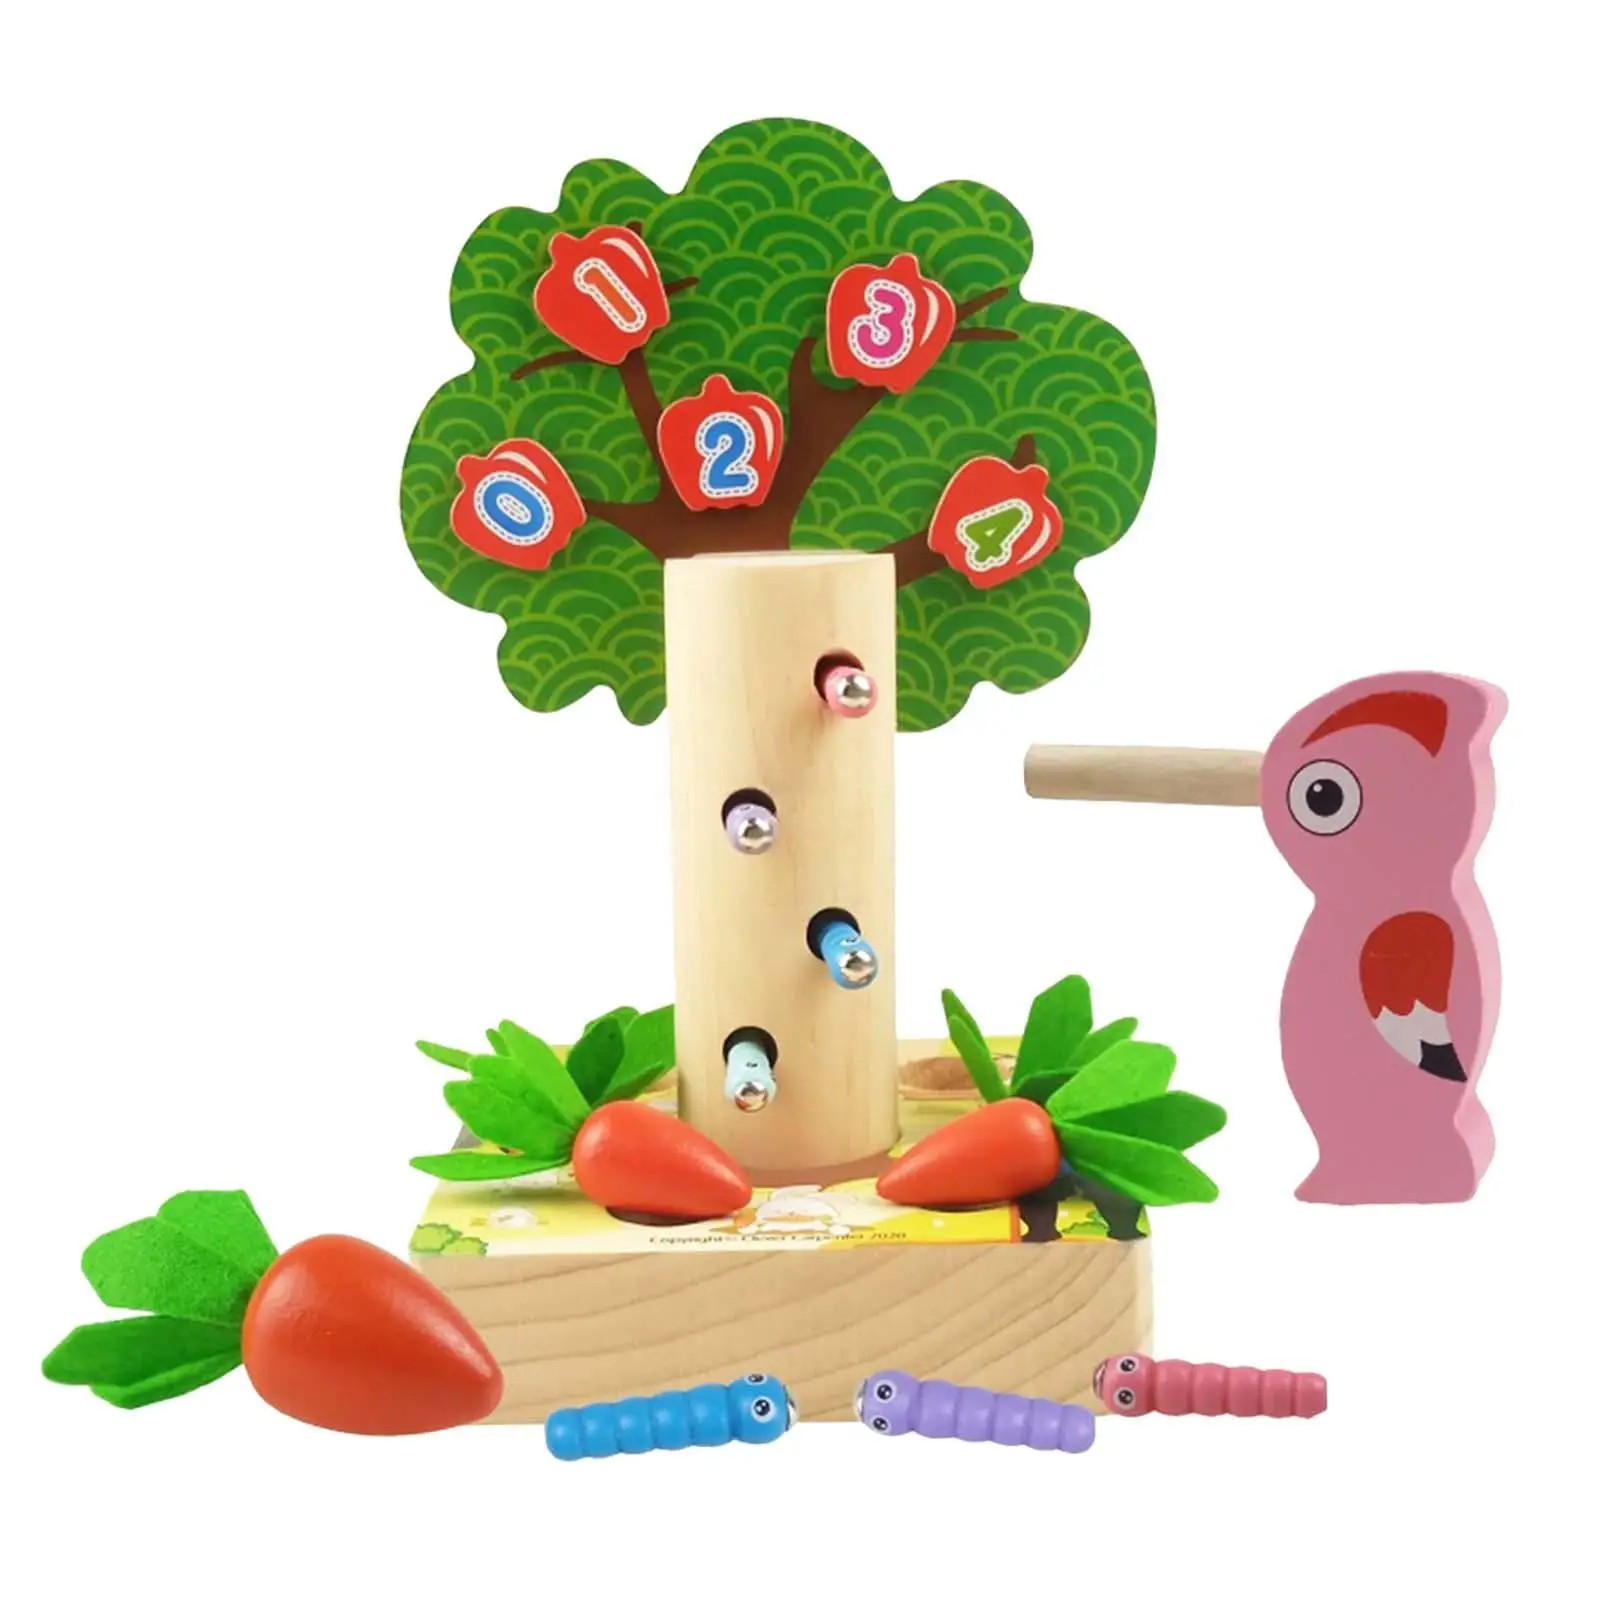 

Искусственное математическое дерево, магнитное фруктовое дерево, яблоки, игрушка, подарок для детей, тянущий червь для моркови, обучающие игрушки для детей